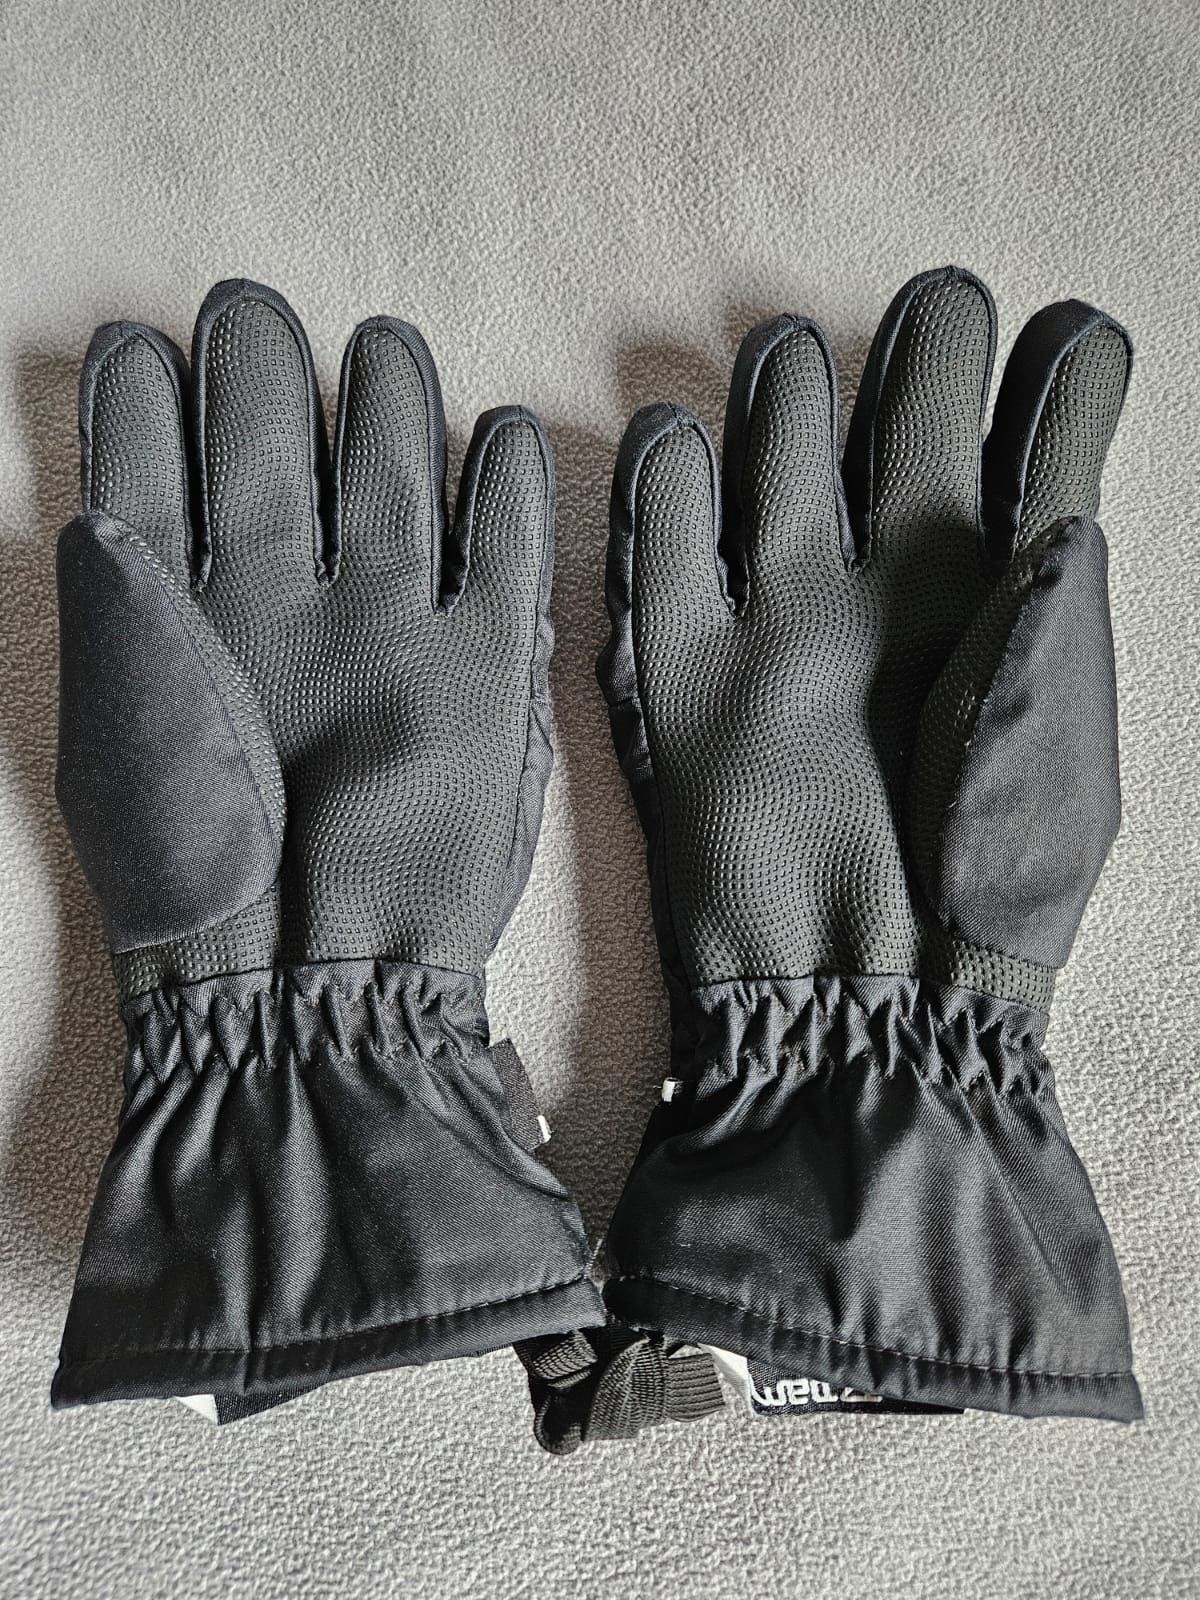 Kurtka bielizna termiczna bluza rękawiczki zestaw zimowy 146